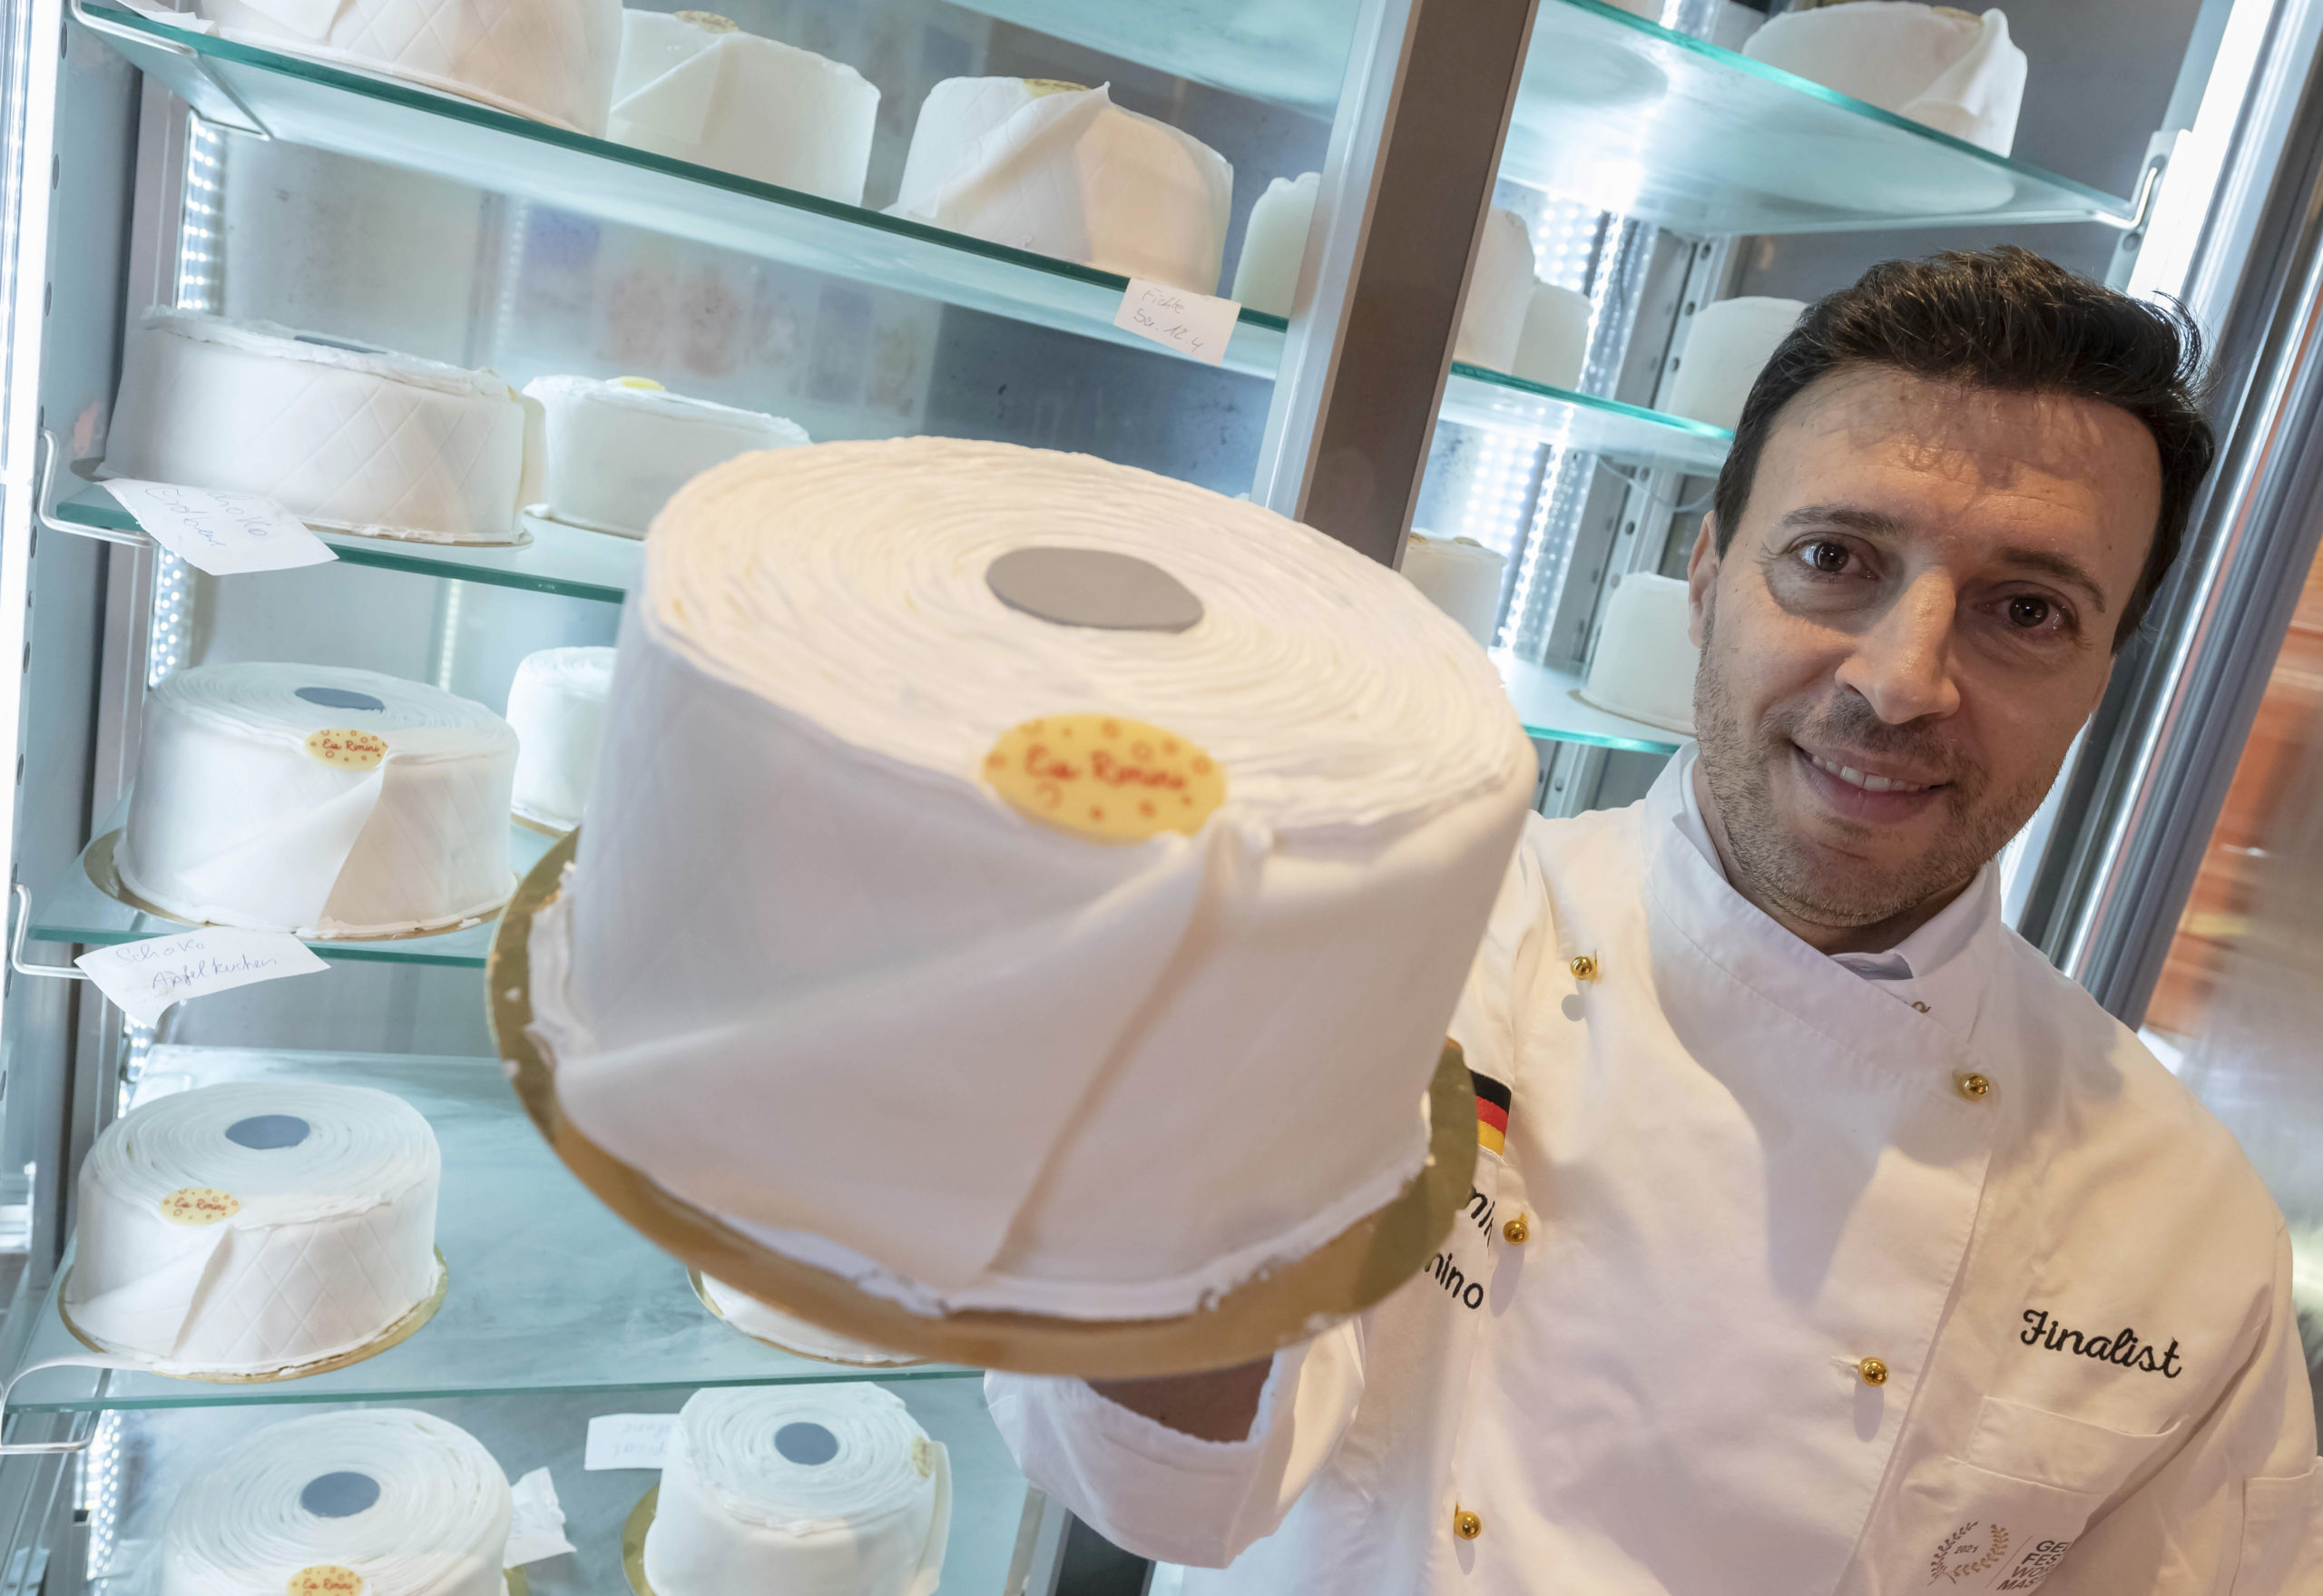 Torta helada de papel higiénico salva negocio de repostero en Alemania